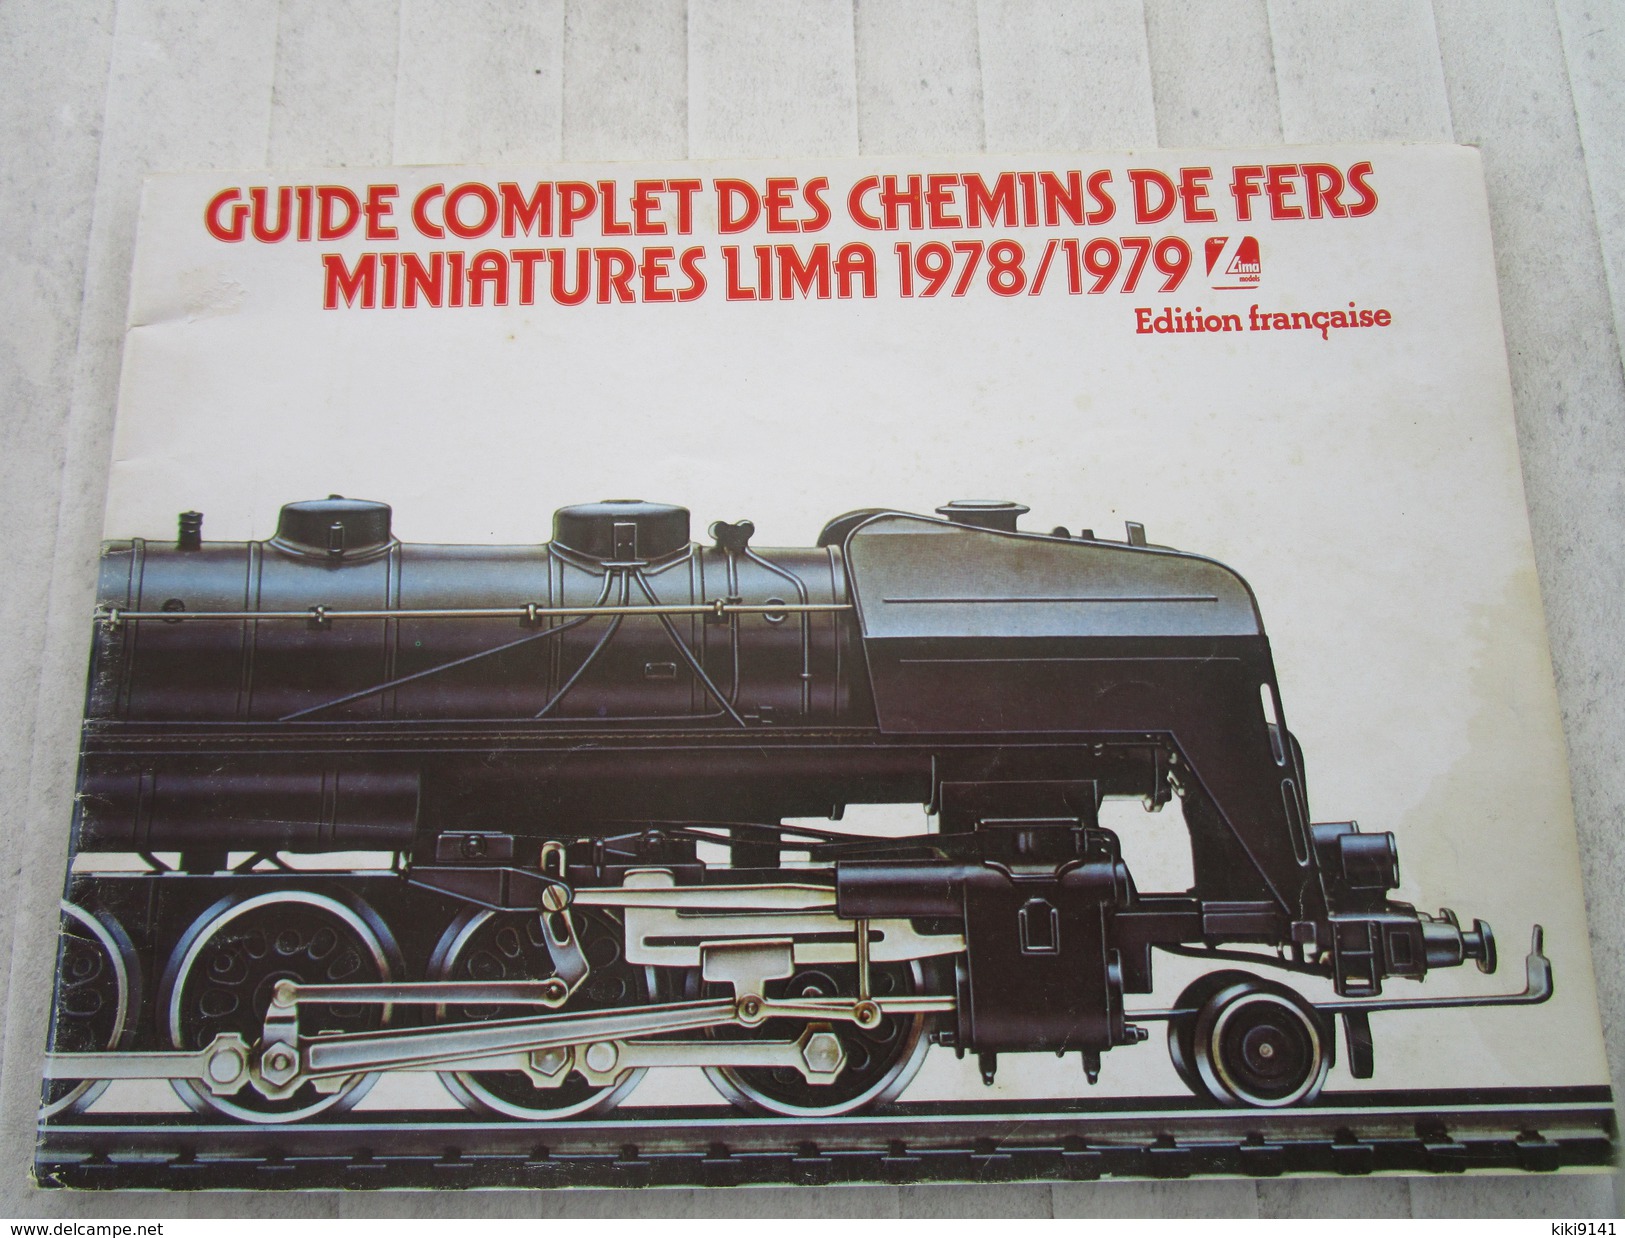 Guide Complet Des Chemins De Fer Miniatures LIMA 1978/1979 (84 Pages) - French